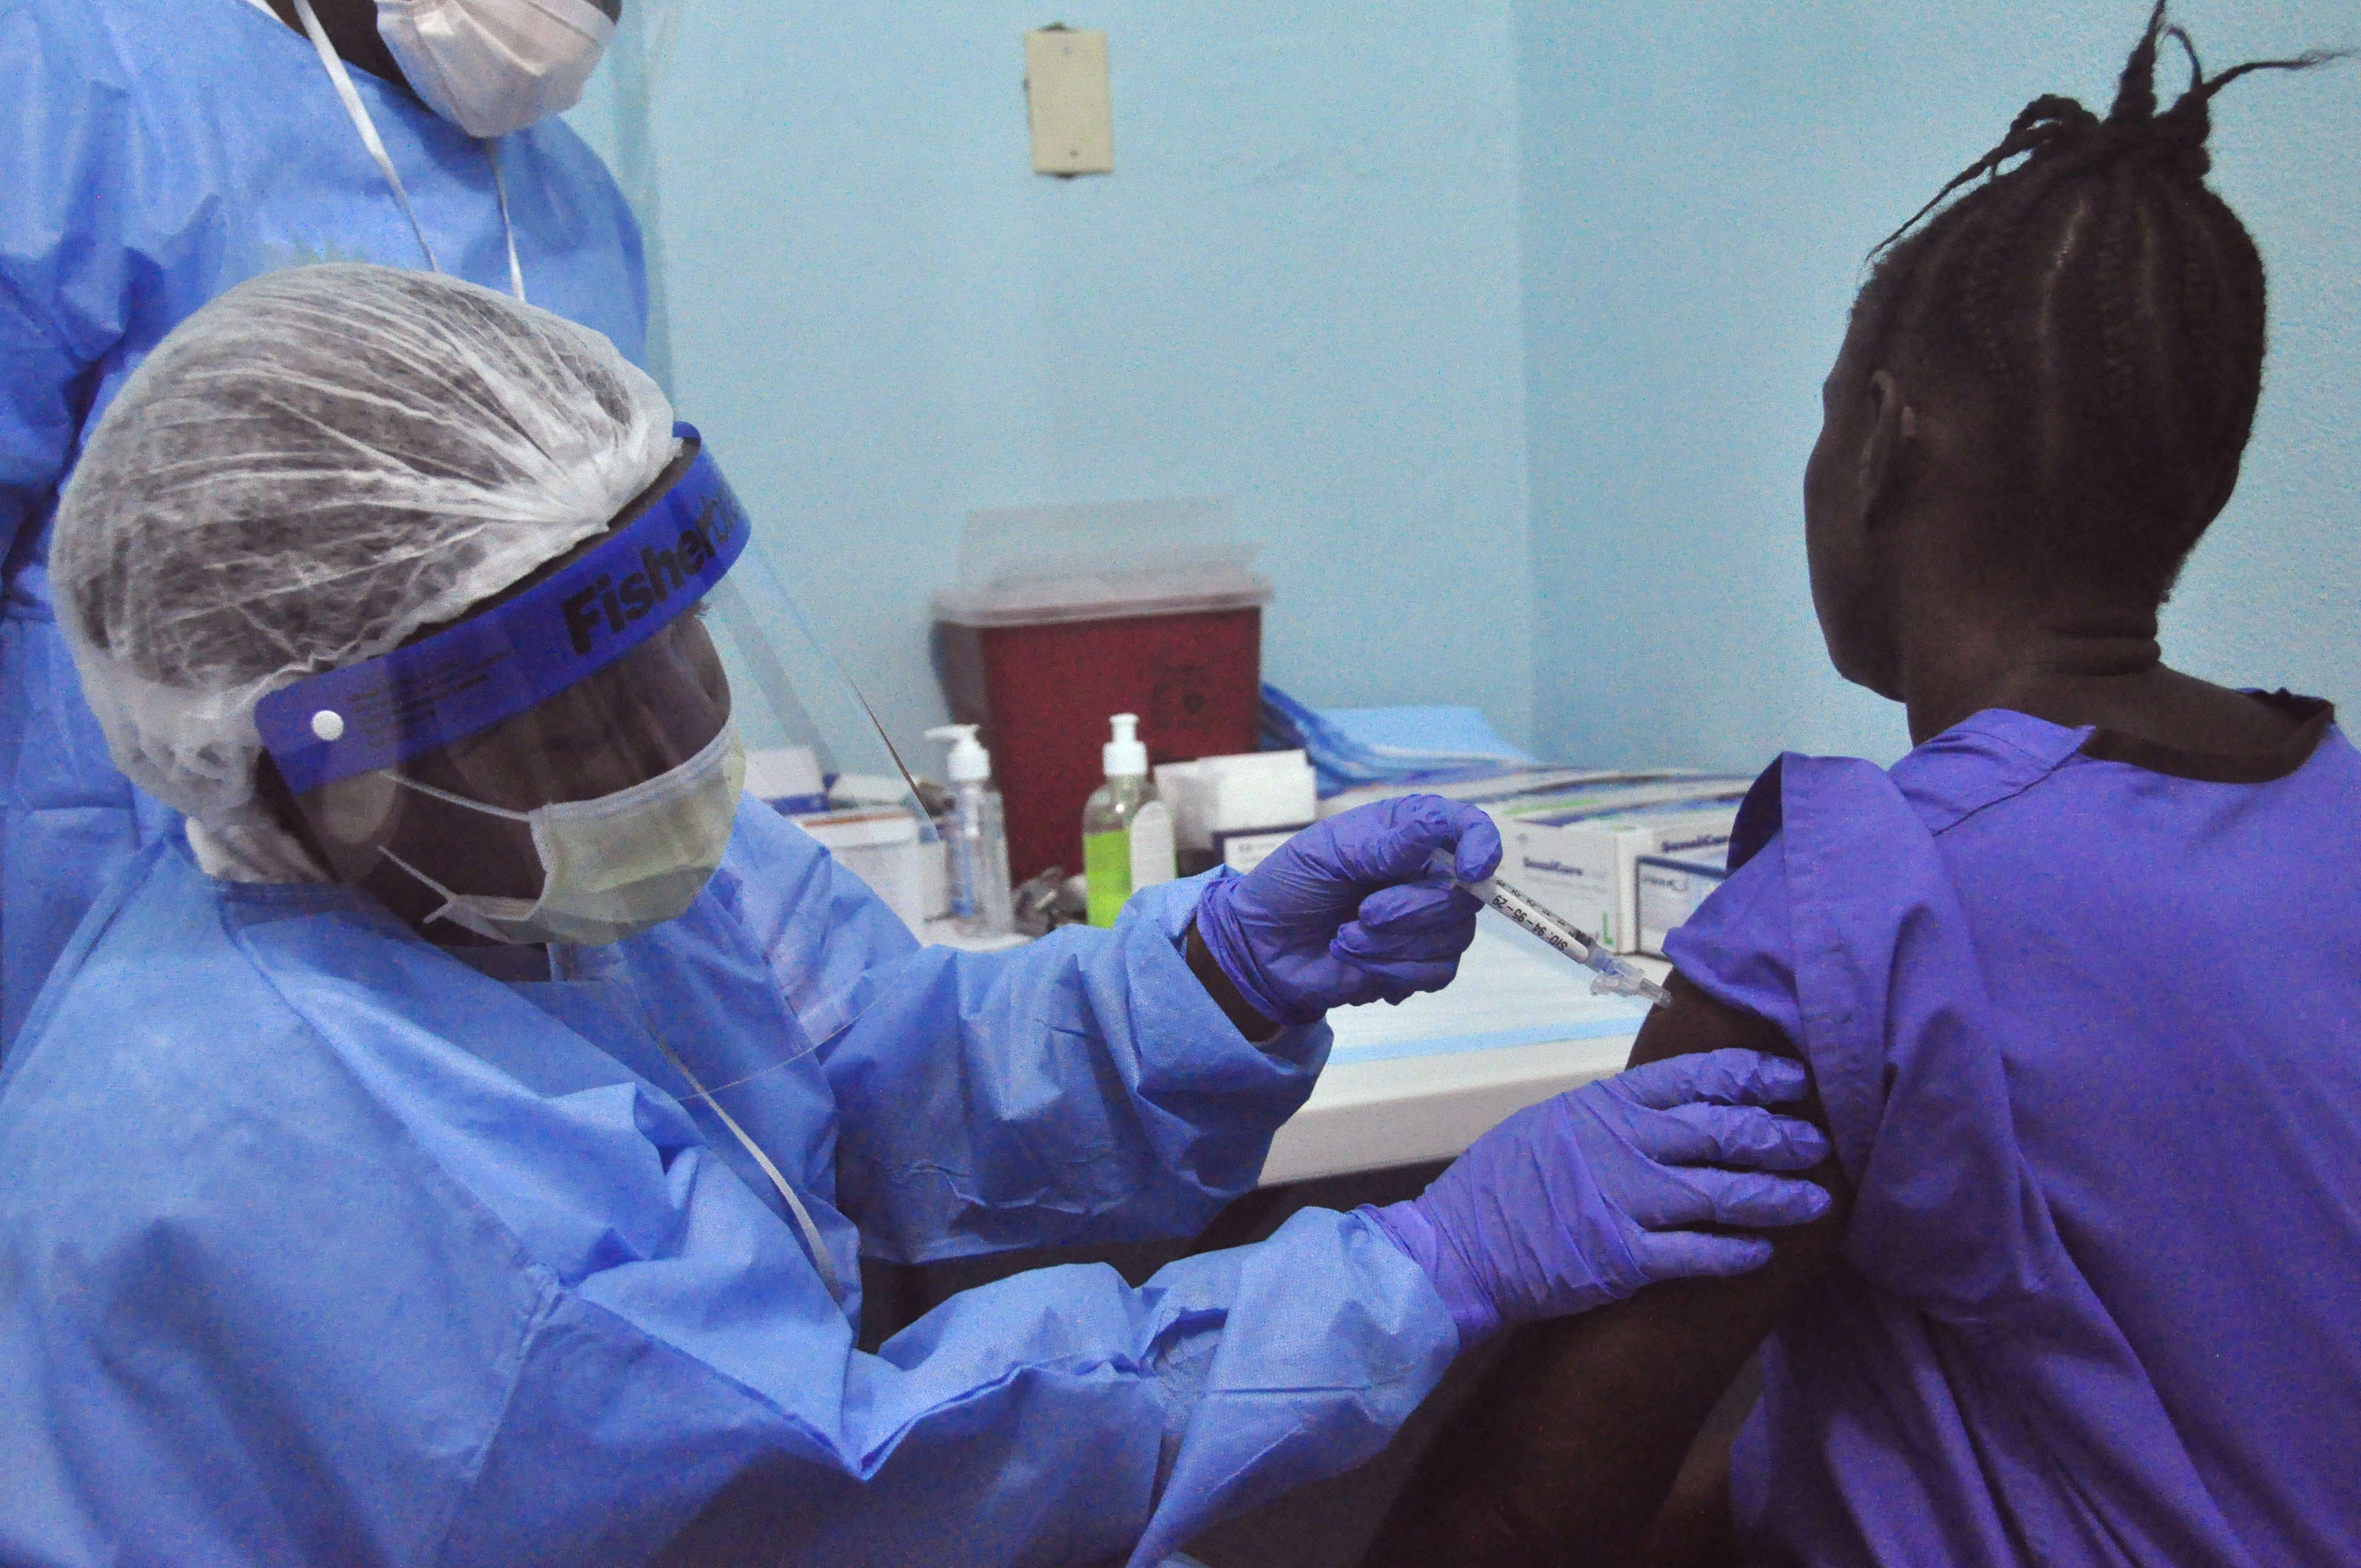 La OMS anuncia el fin de la epidemia de Ébola en África Occidental